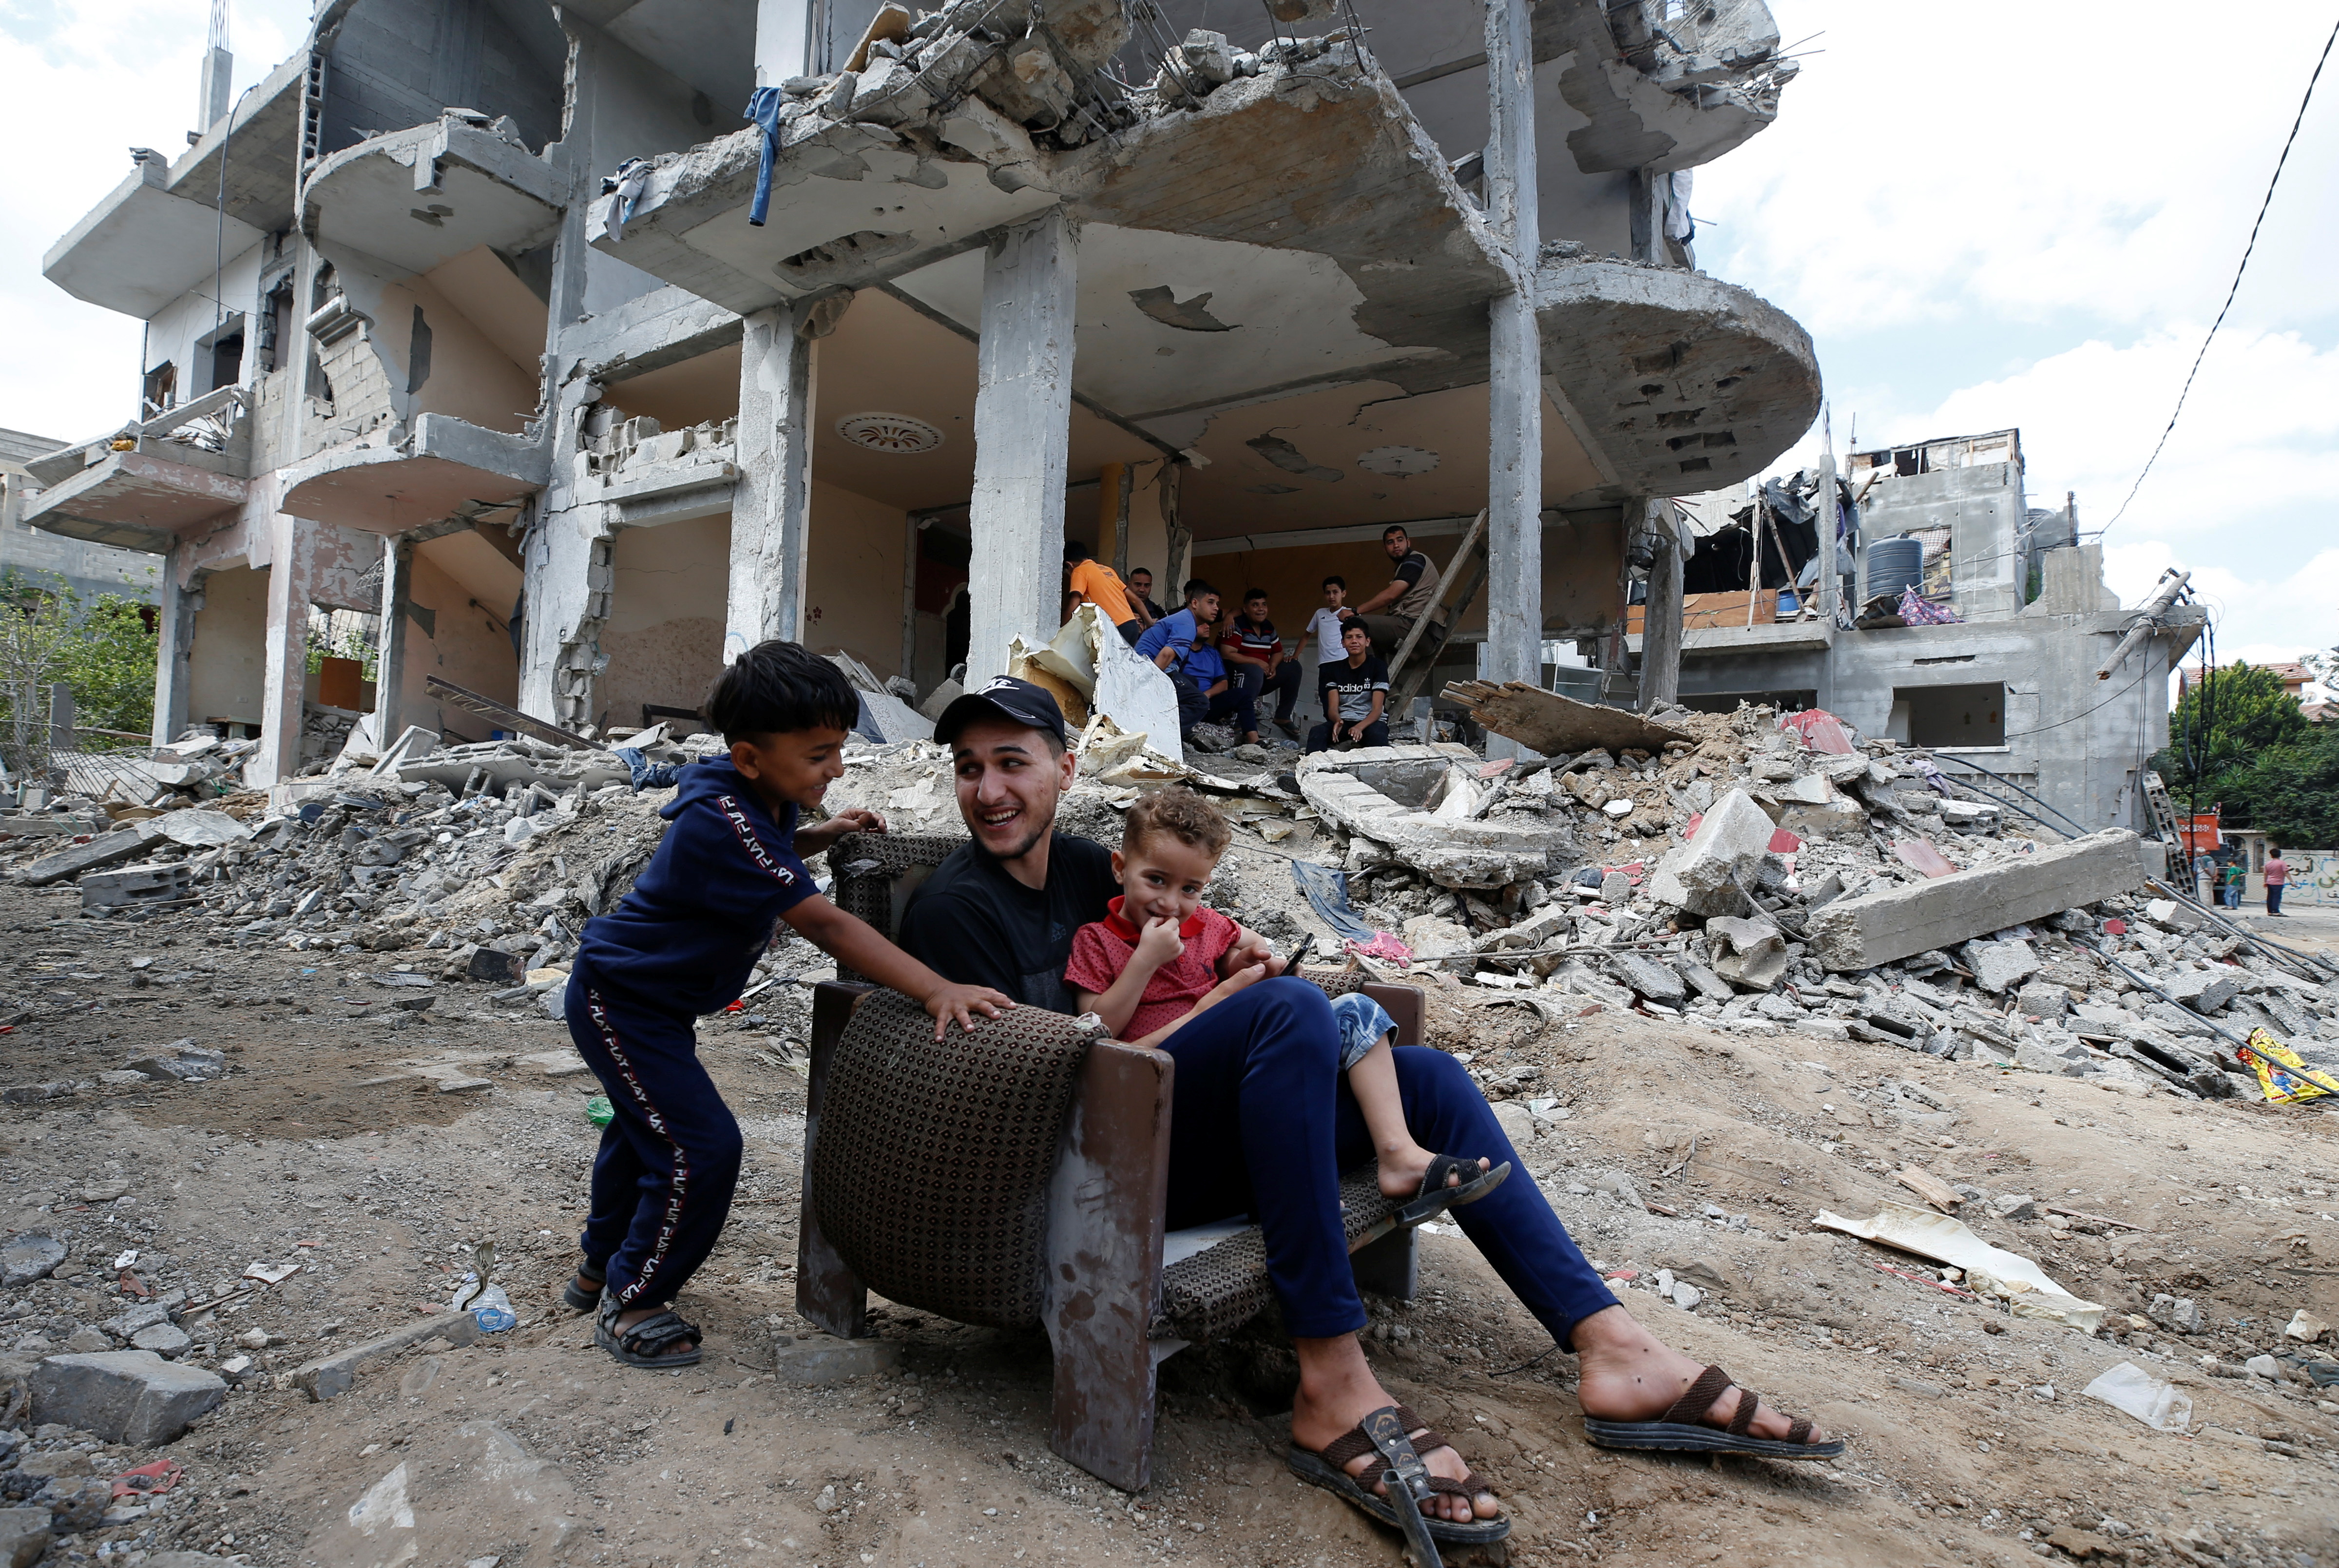 Οι Παλαιστίνιοι κάθονται σε καρέκλα ανάμεσα στα ερείπια ενός κτιρίου που υπέστη ζημιές από ισραηλινές αεροπορικές επιδρομές κατά τη διάρκεια των μαχών Ισραήλ-Χαμάς στη Γάζα, στις 23 Μαΐου 2021. REUTERS/Mohammed Salem